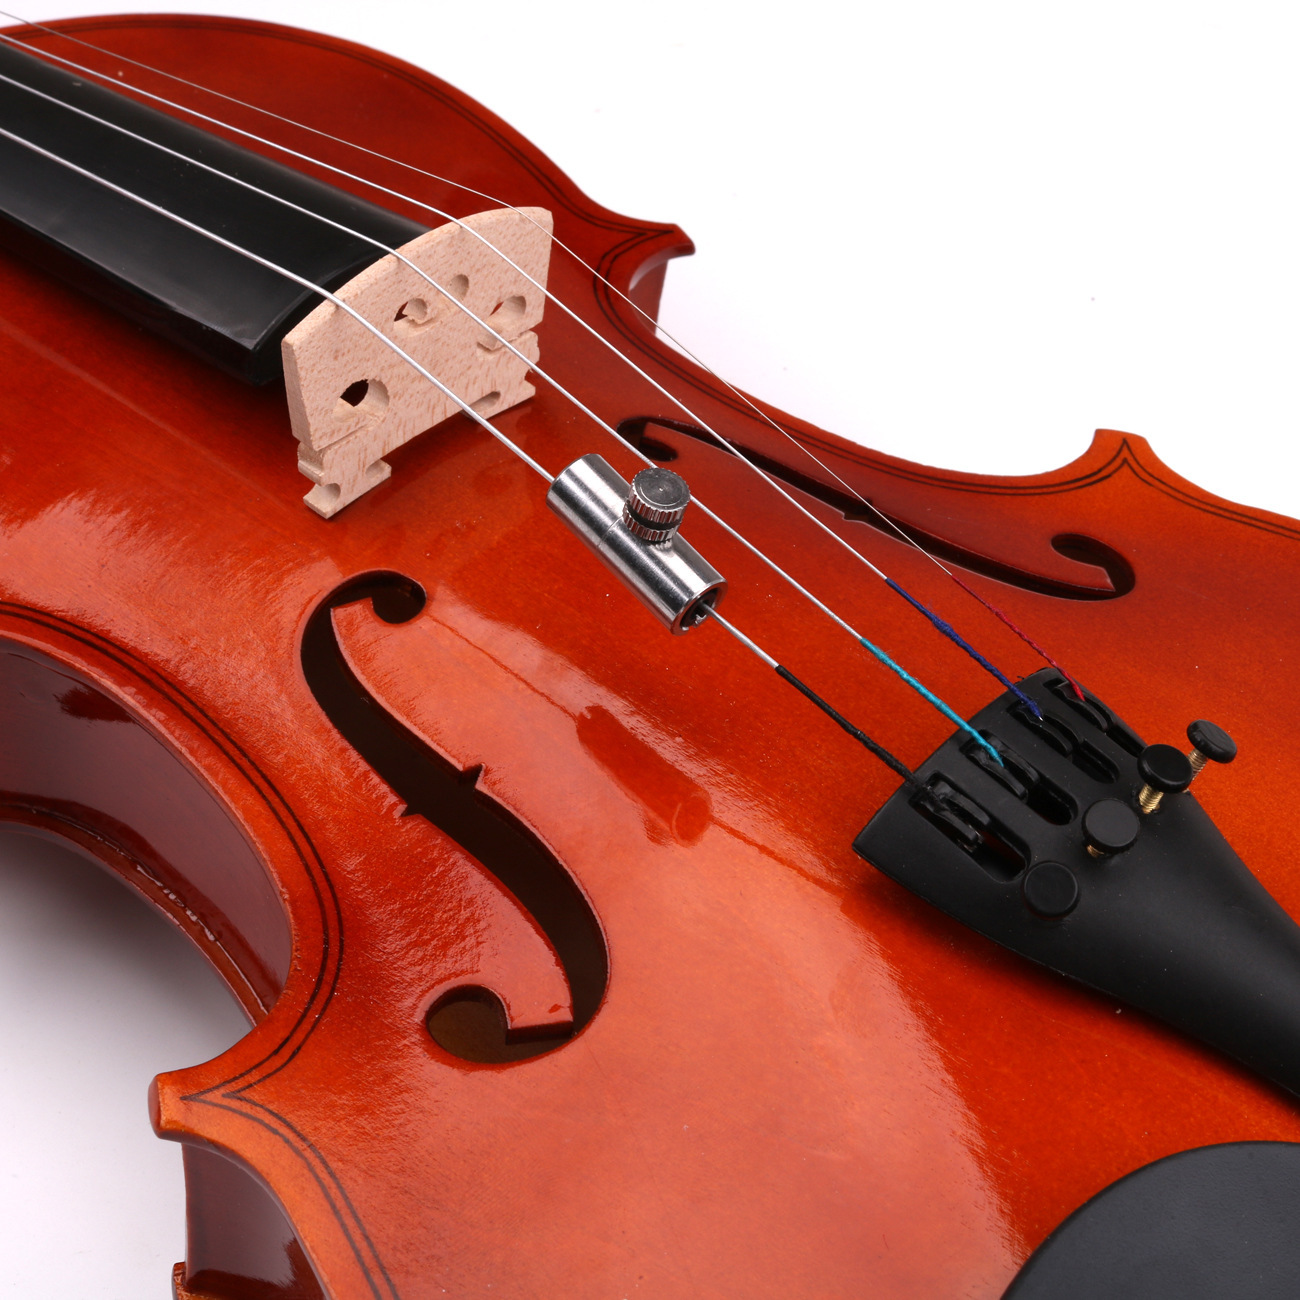 大提琴狼音器 小提琴狼音器消除狼音器 提琴配件狼音消除器防狼音